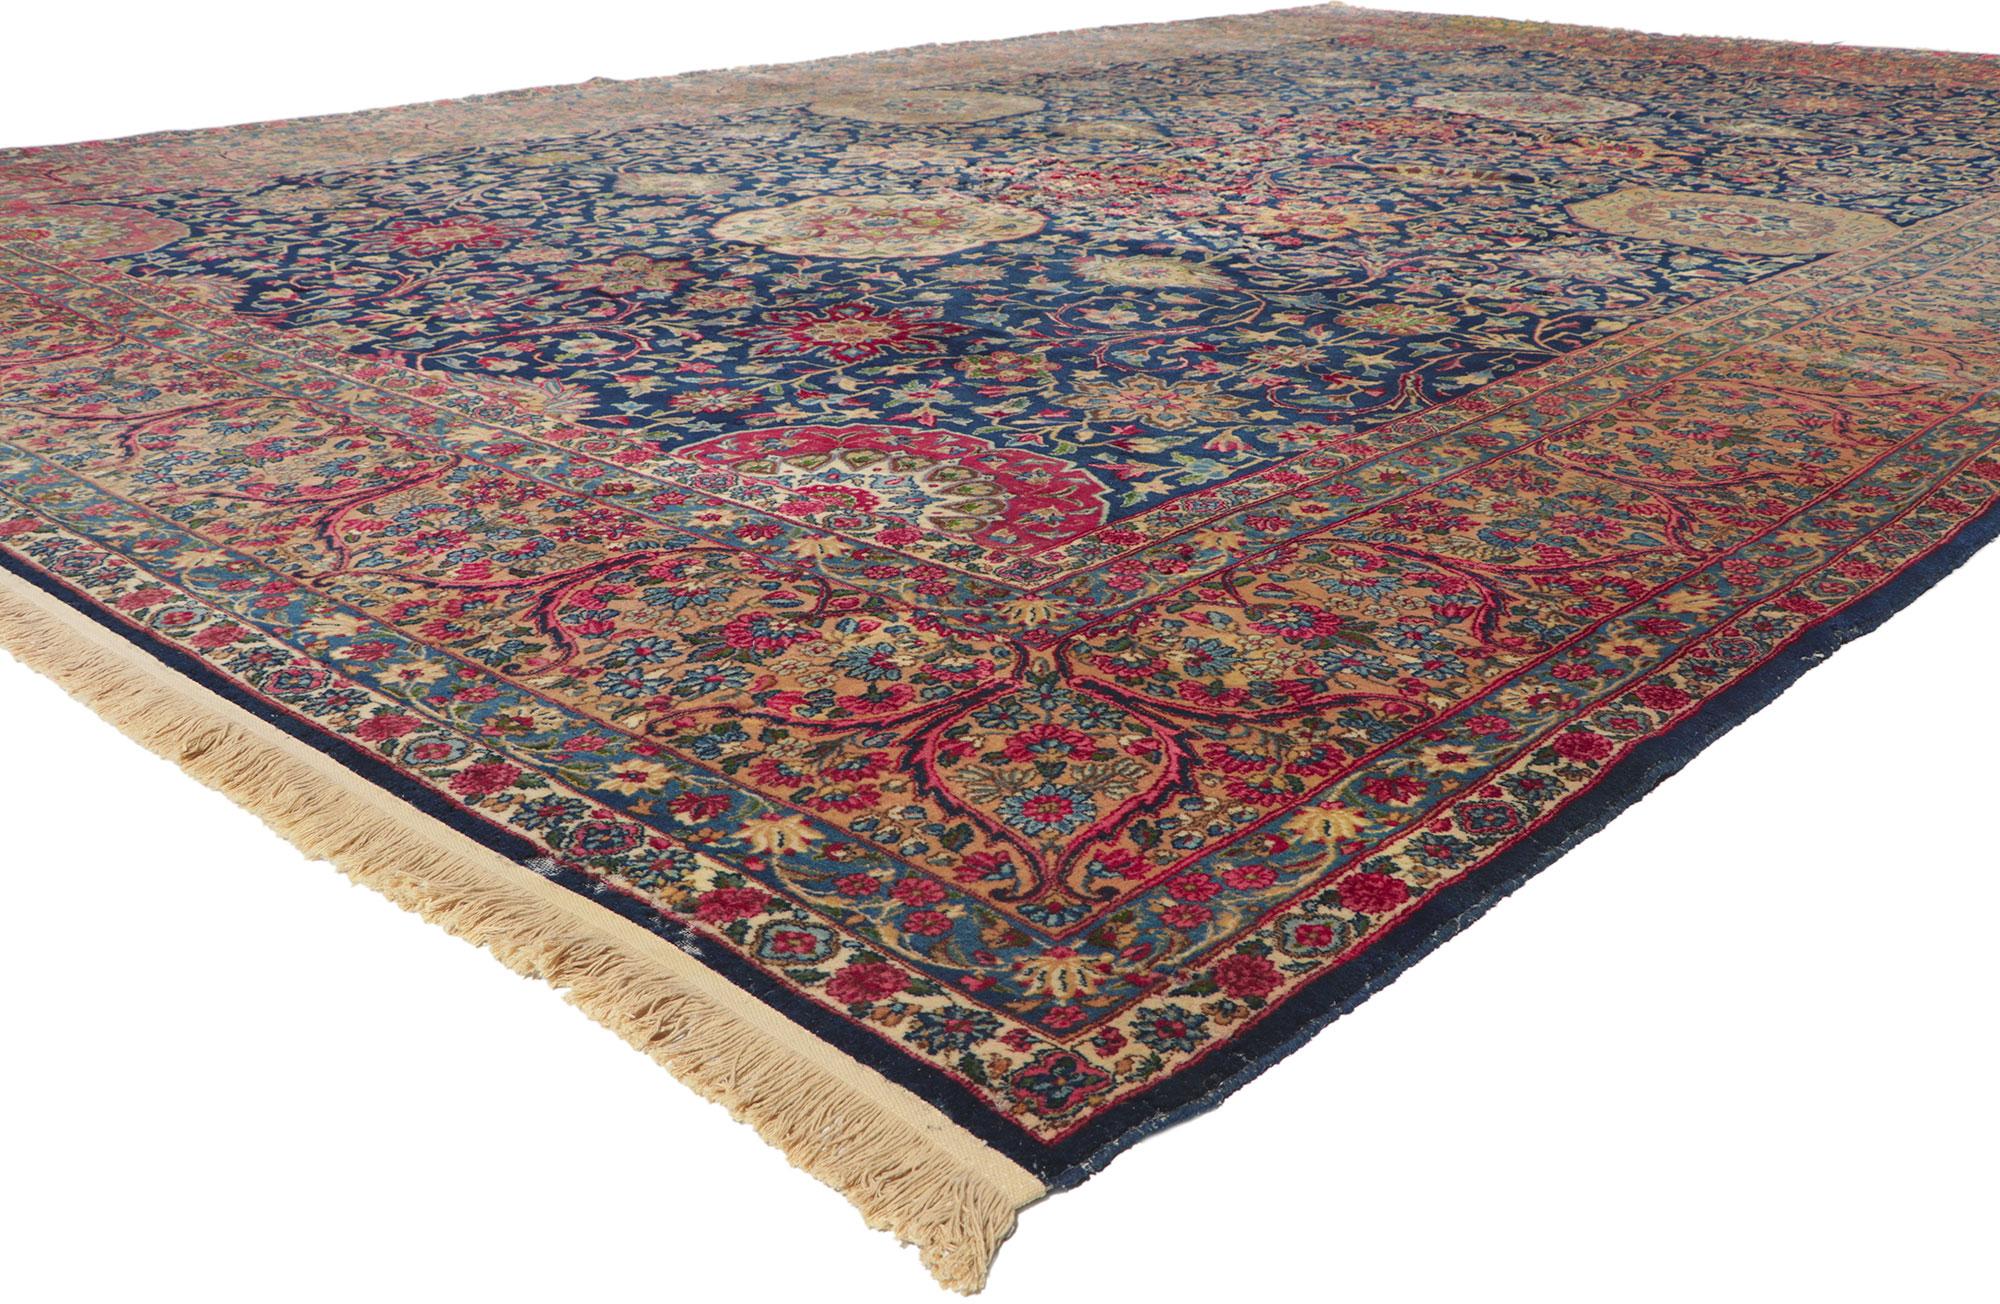 78354 Antiker persischer Kerman-Teppich, 11'02 x 16'07. Mit seinen palastartigen Dimensionen, seinen unglaublichen Details und seiner Struktur ist dieser handgeknüpfte antike persische Kerman-Teppich aus Wolle eine fesselnde Vision von gewebter